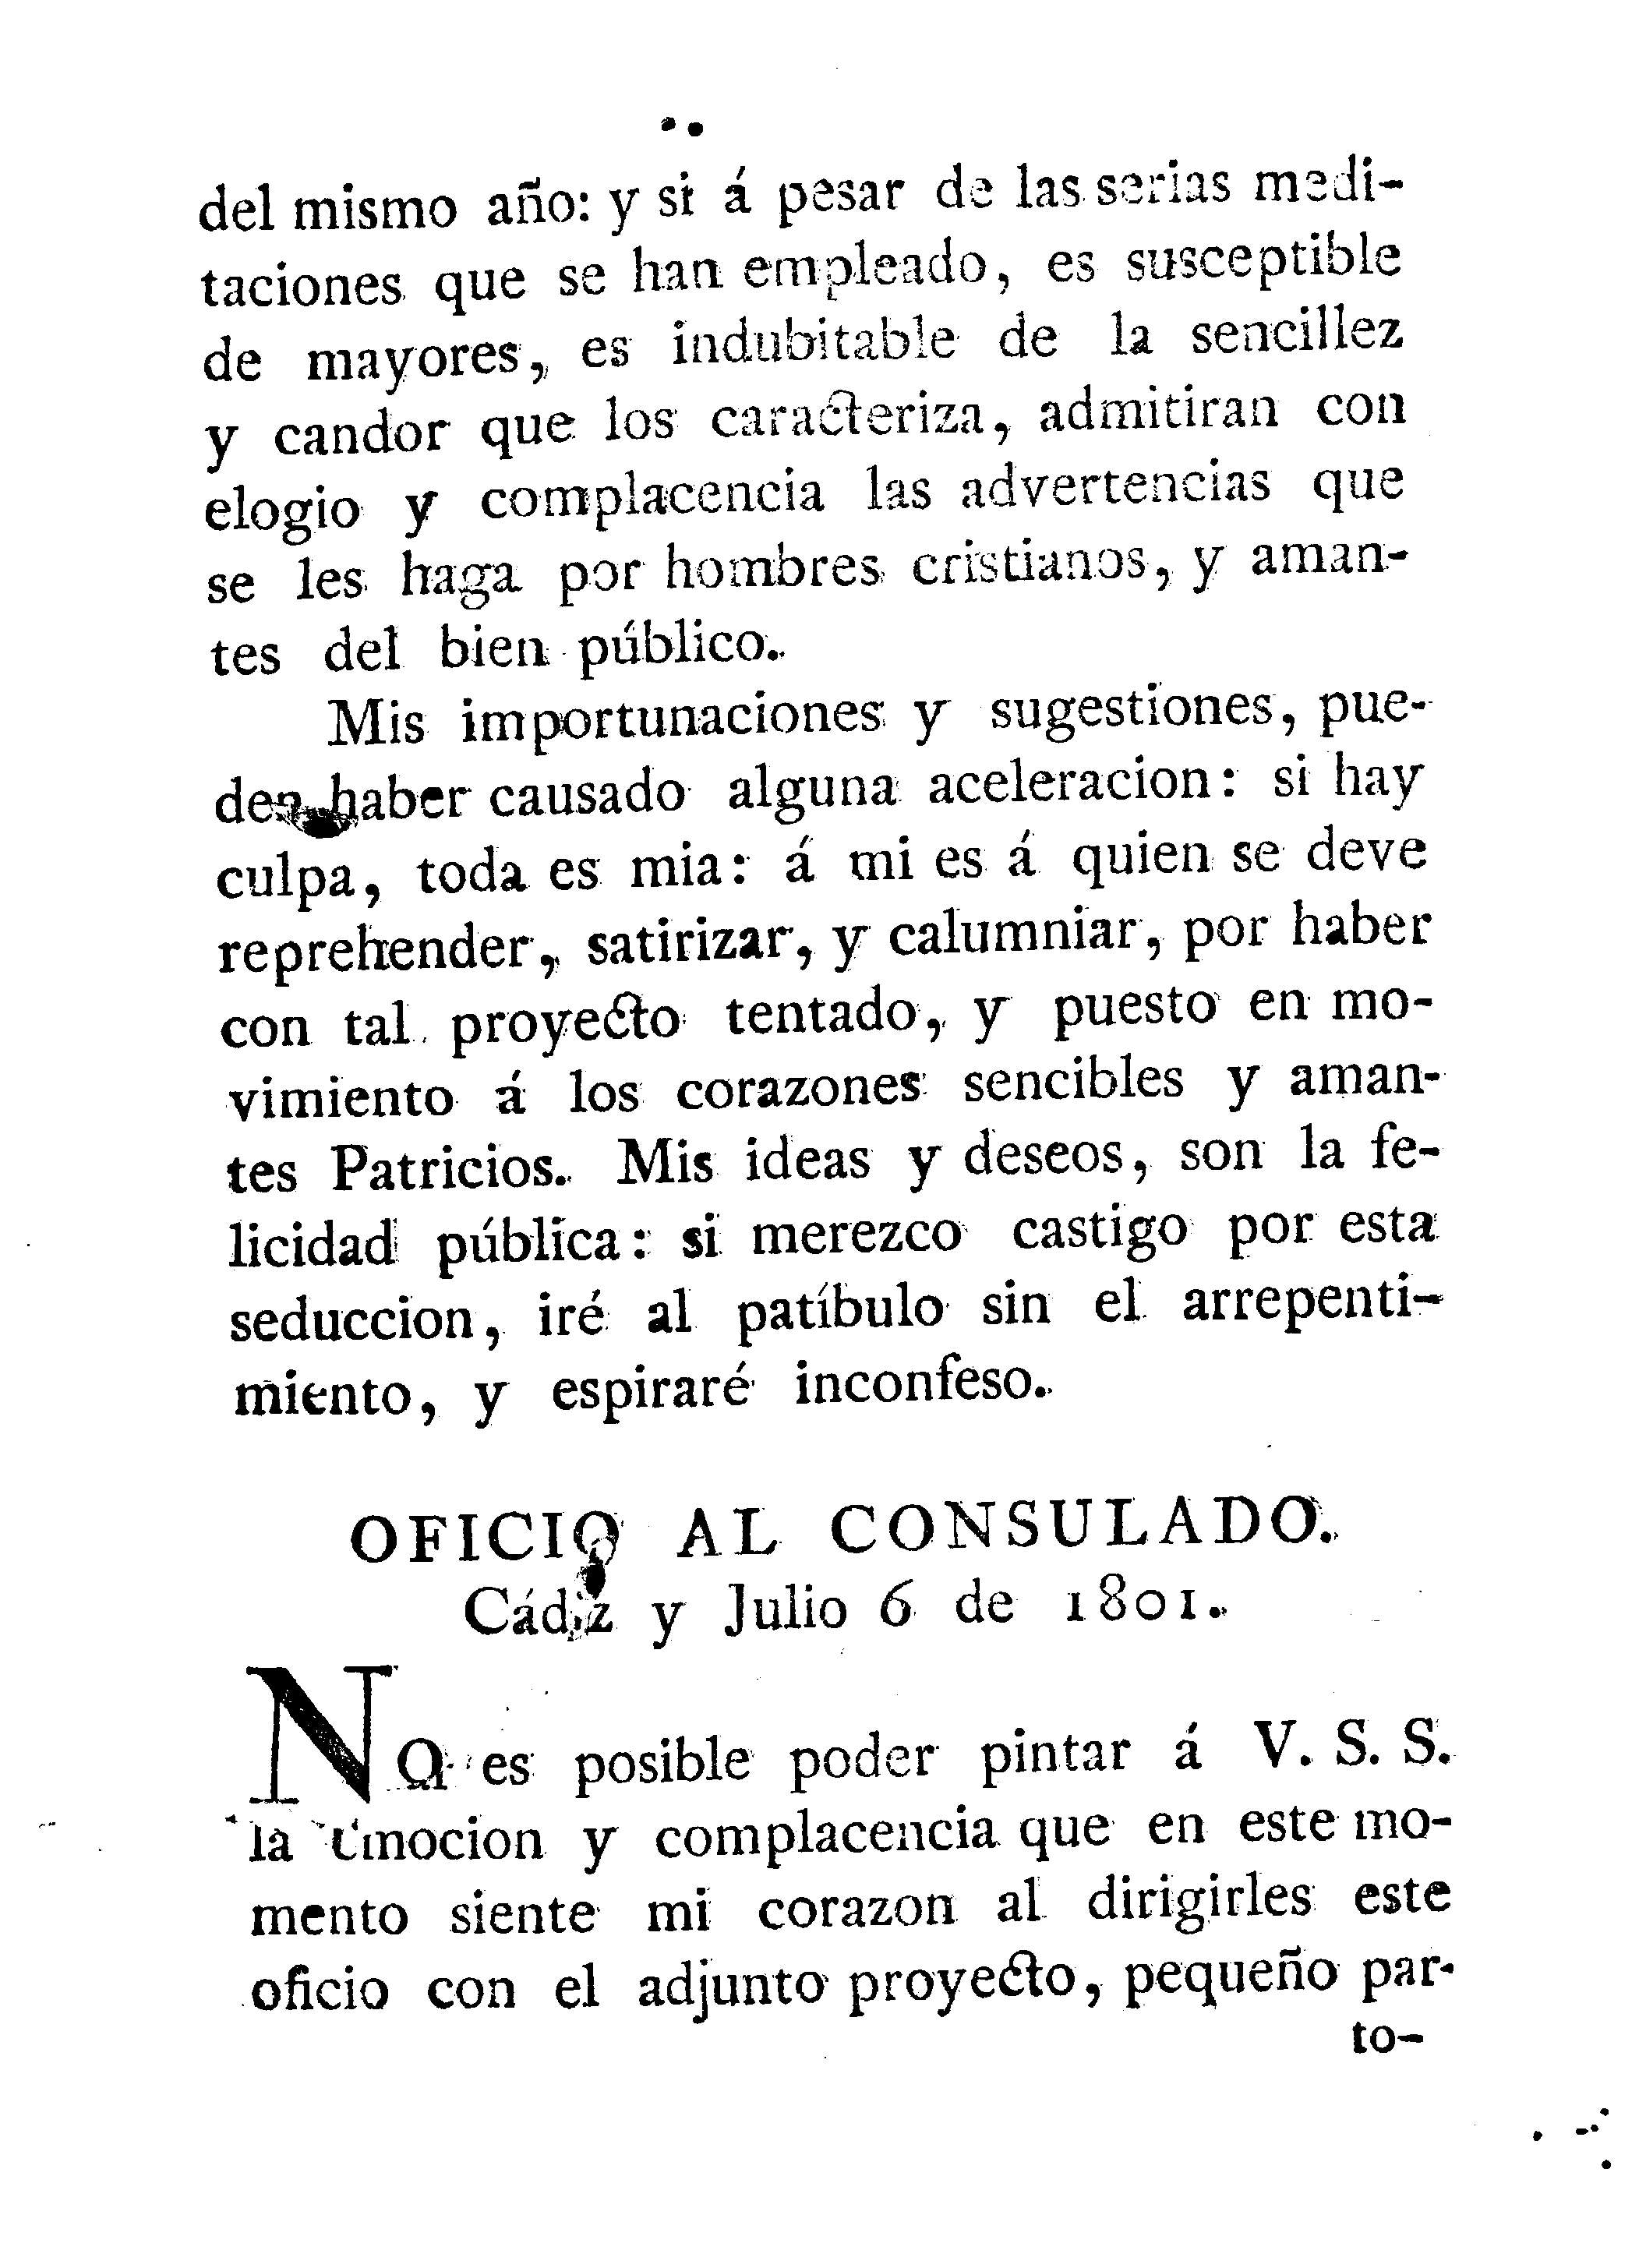 Oficio al consulado. Cádiz y Julio 6 de 1801